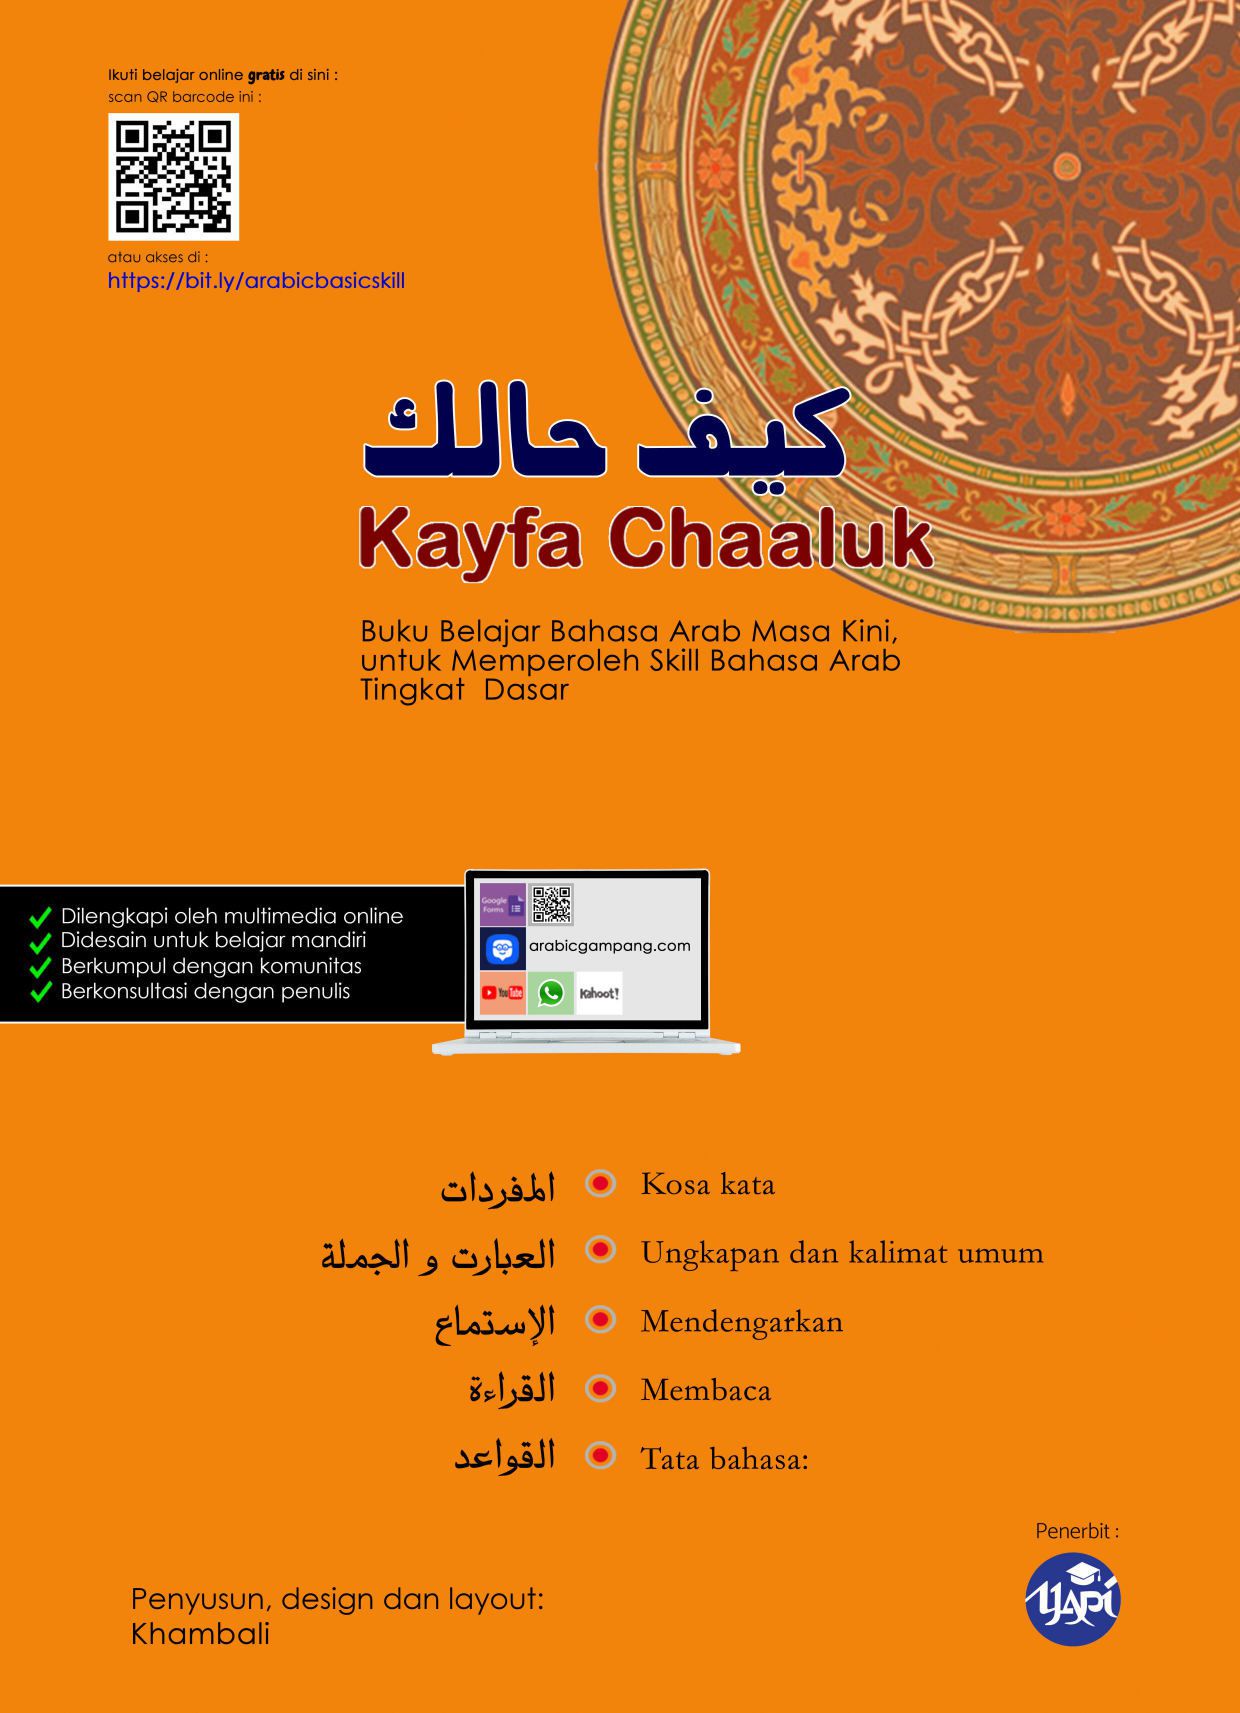 Kayfa Chaaluk